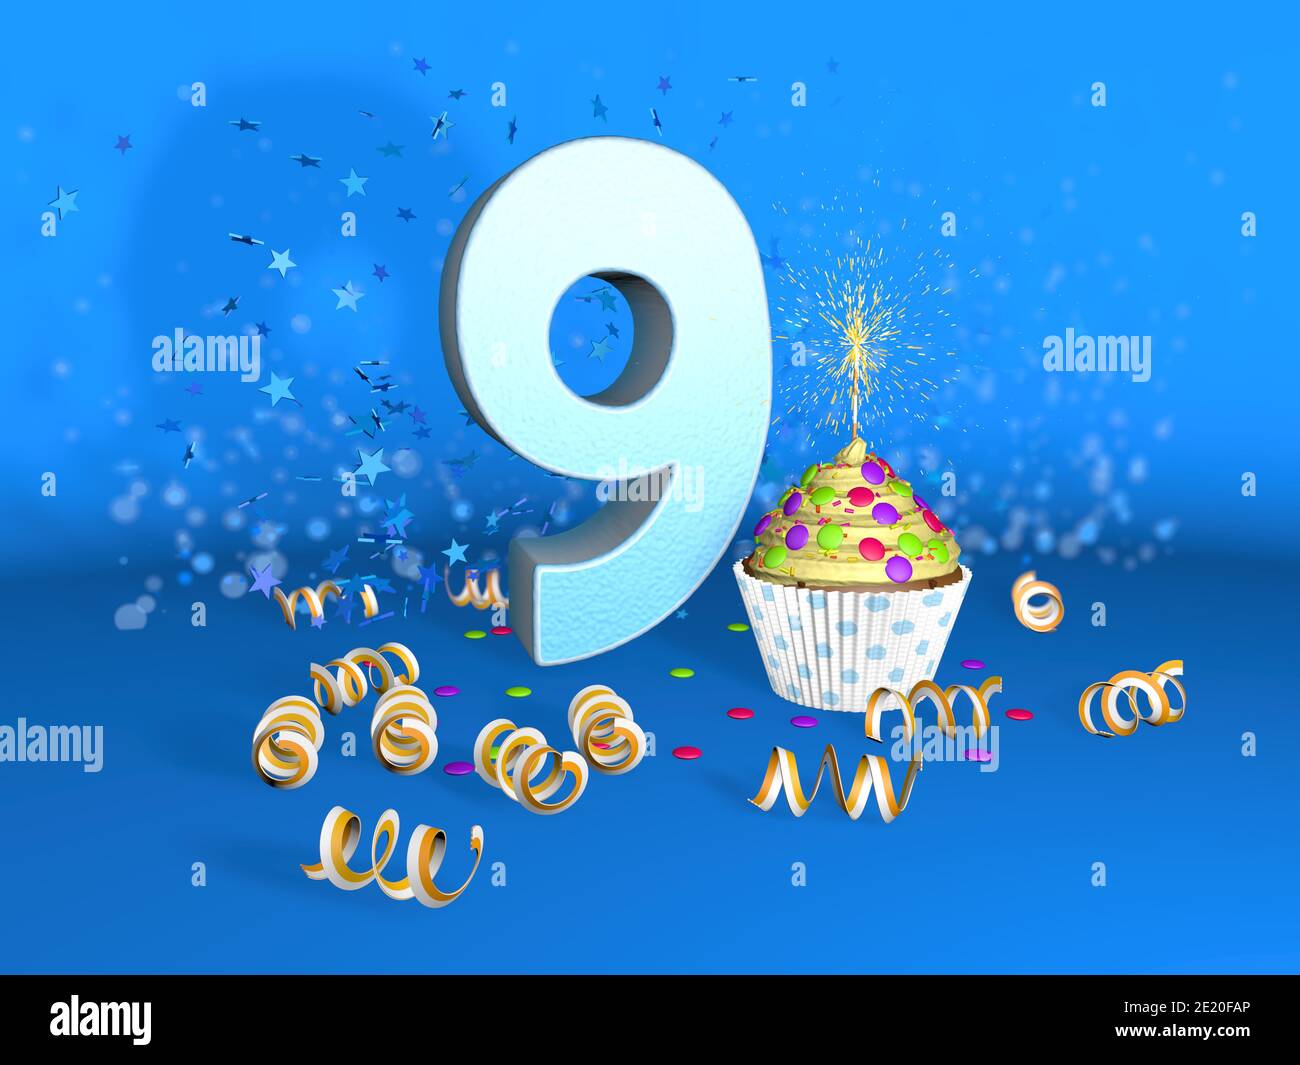 Neuf ans anniversaire, 9 numéro en forme de bougie d'anniversaire avec feu  sur blanc Image Vectorielle Stock - Alamy